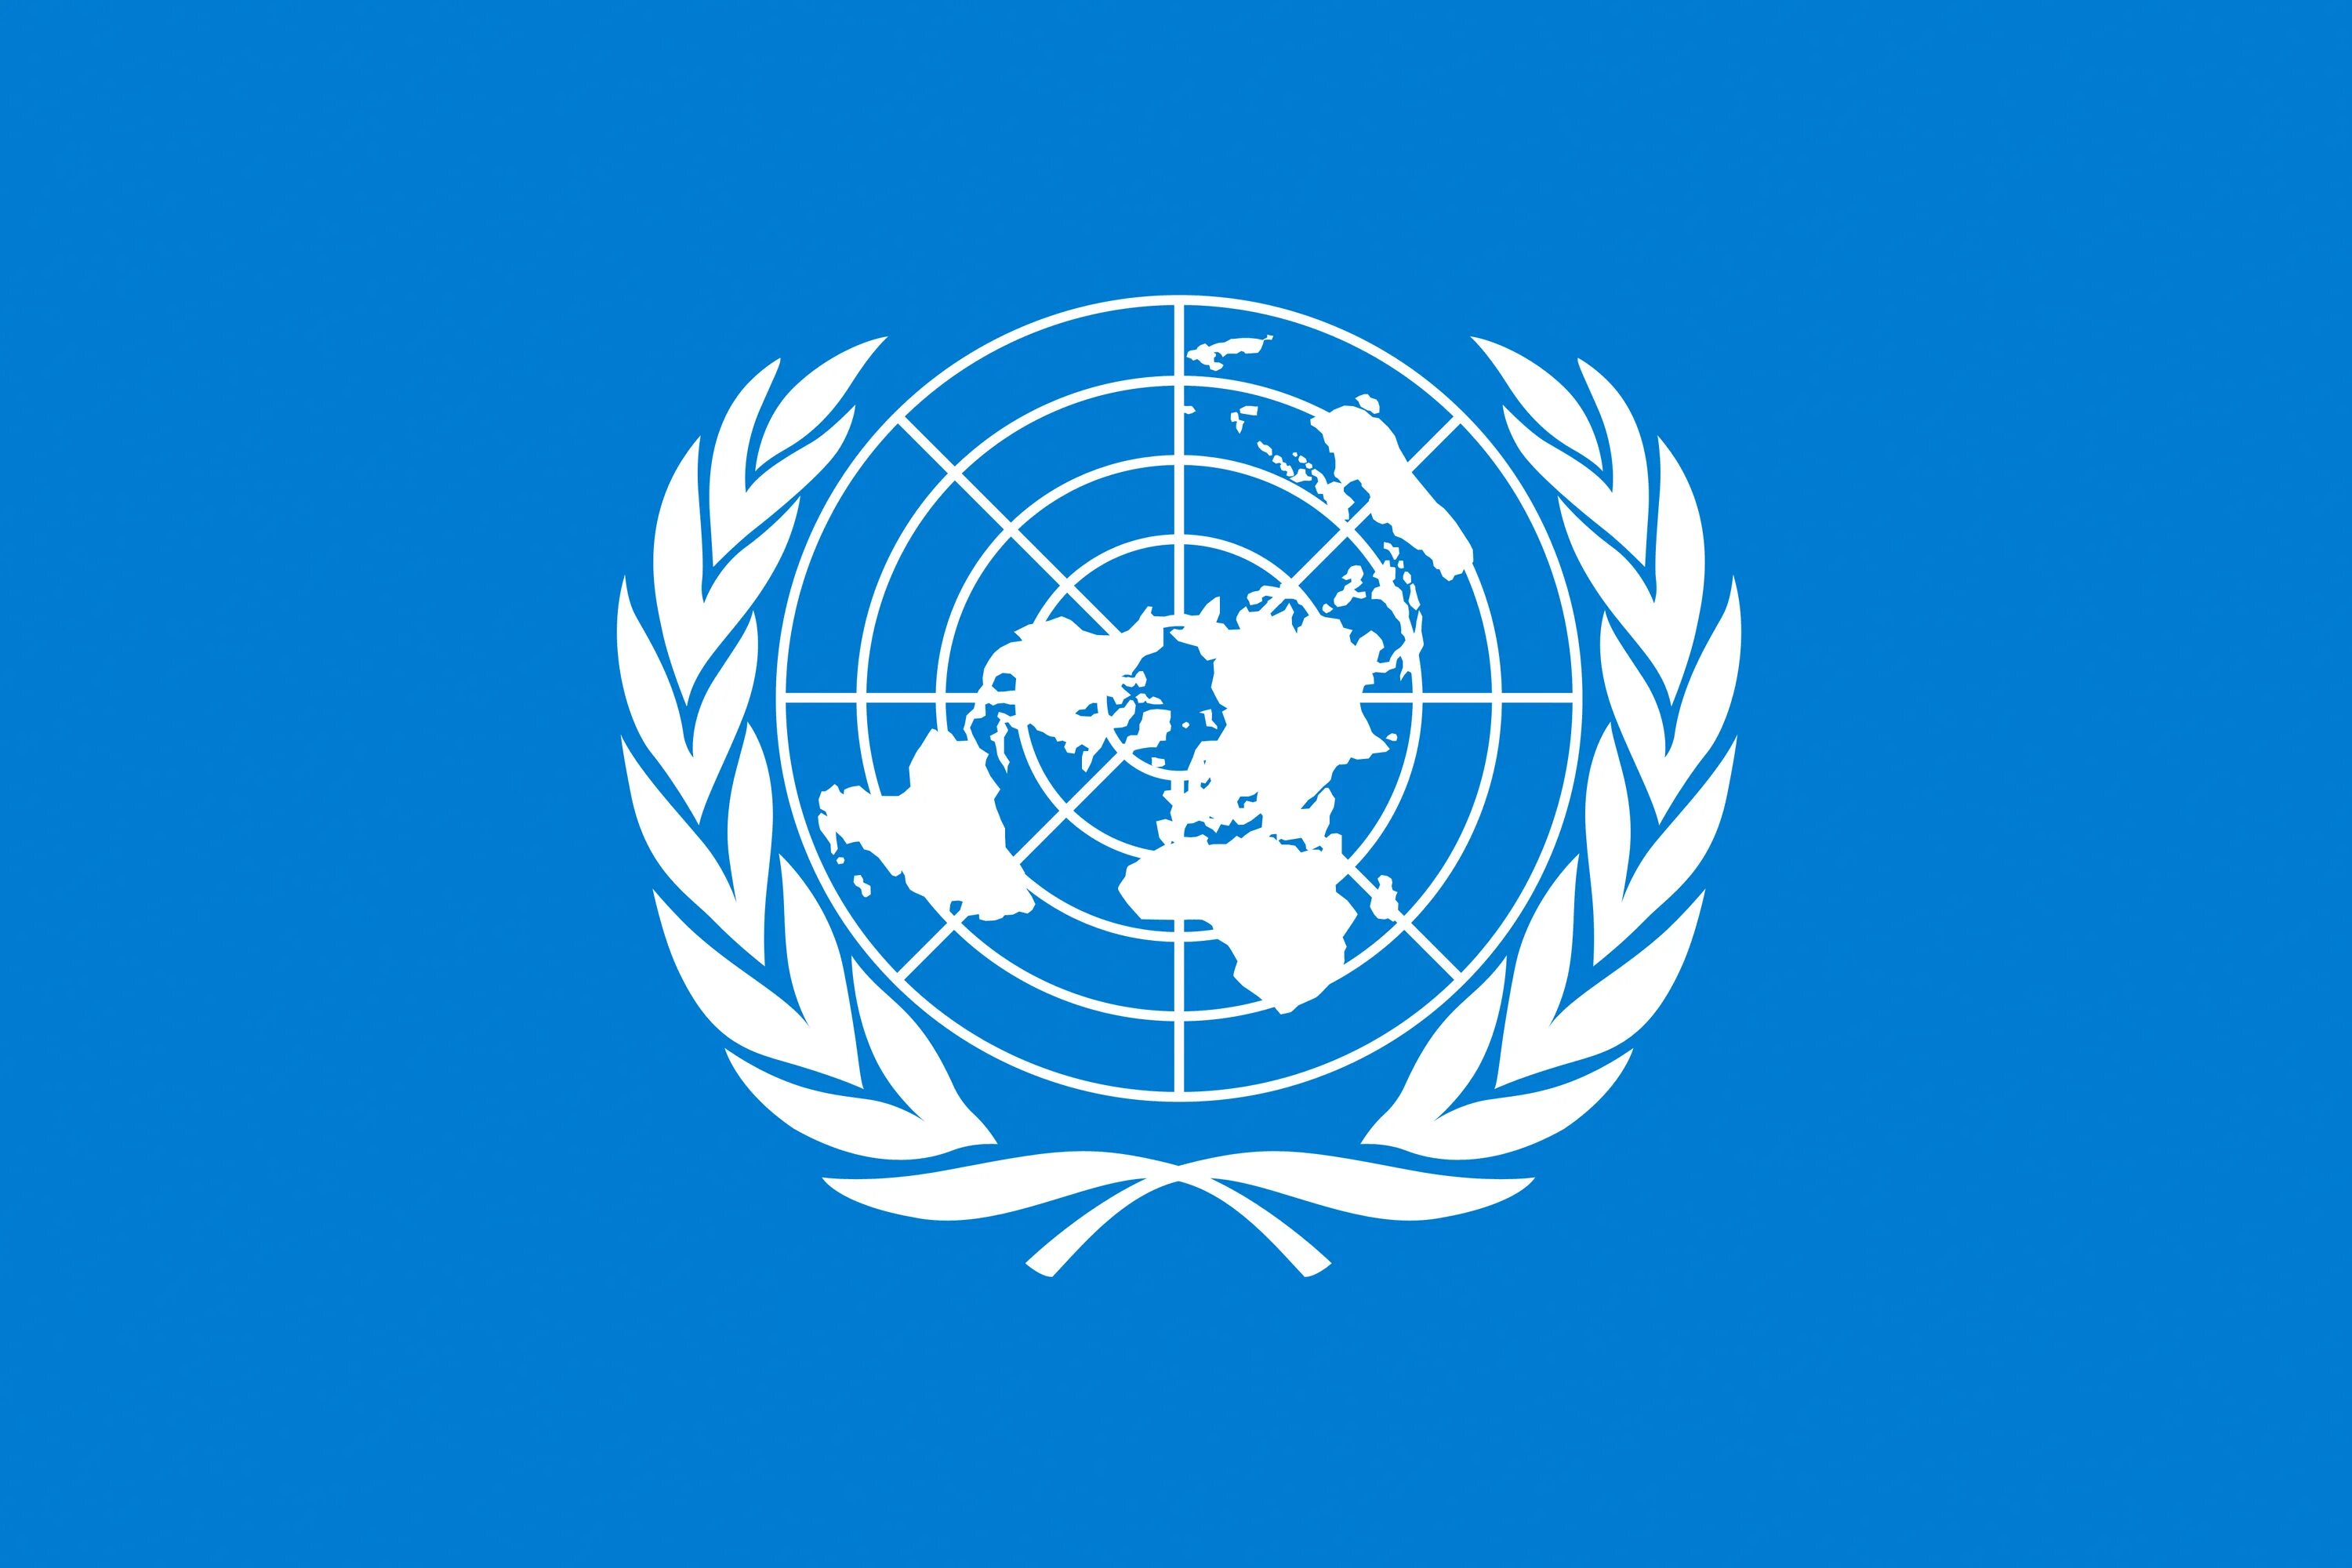 Организация объединенных народов. Флаг всемирной организации здравоохранения. Всемирная метеорологическая организация (WMO);. Флаг организации Объединенных наций. Организация Объединенных наций (ООН).